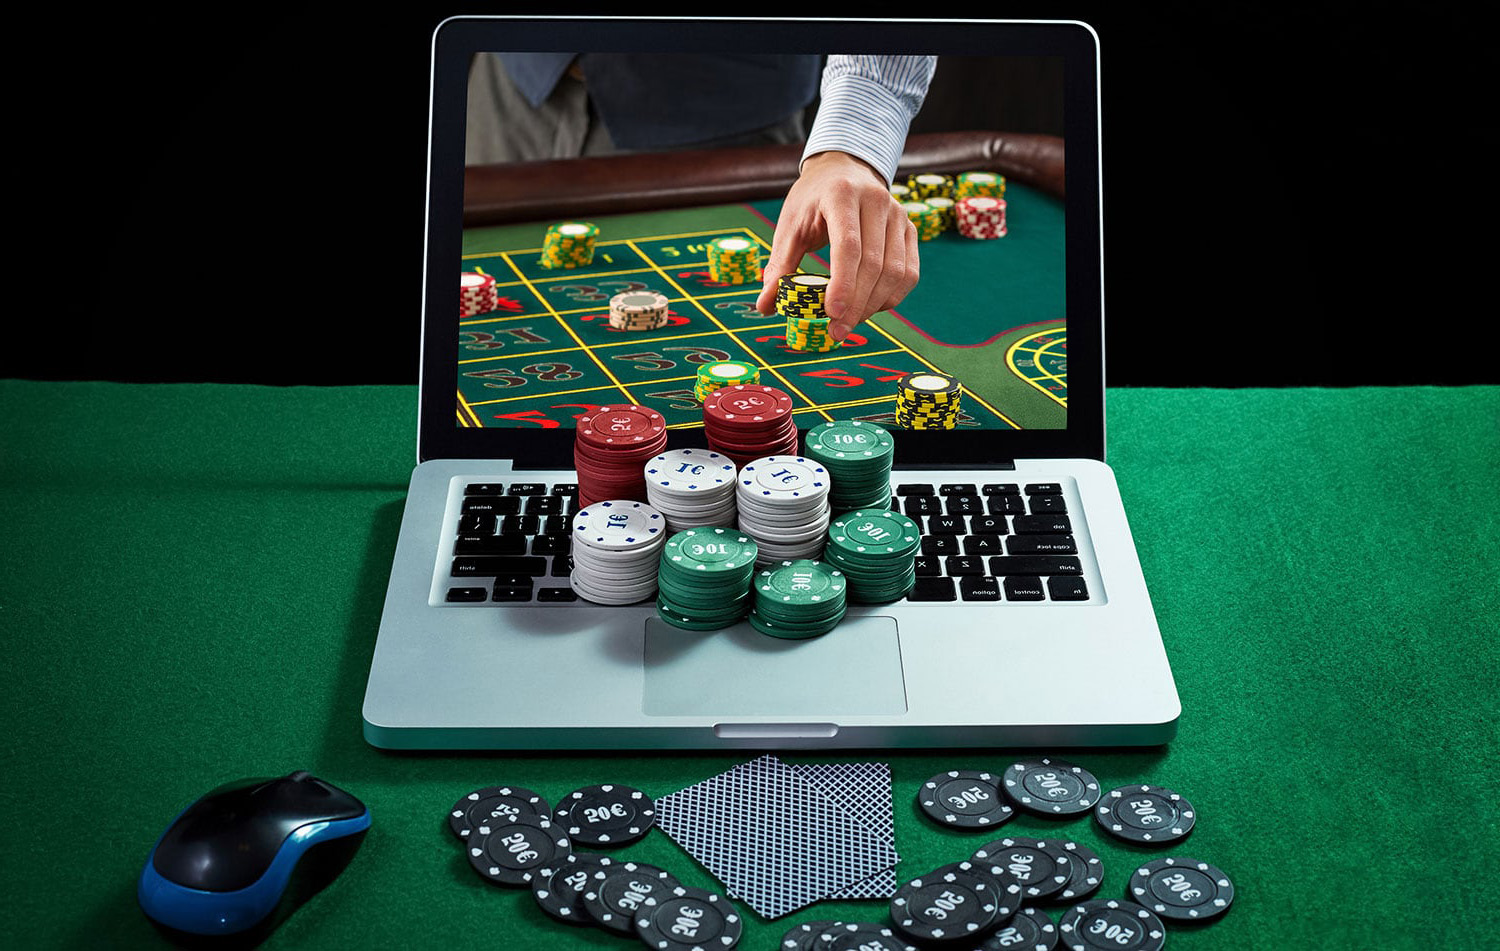 Pazzo lista casino online: lezioni dai professionisti